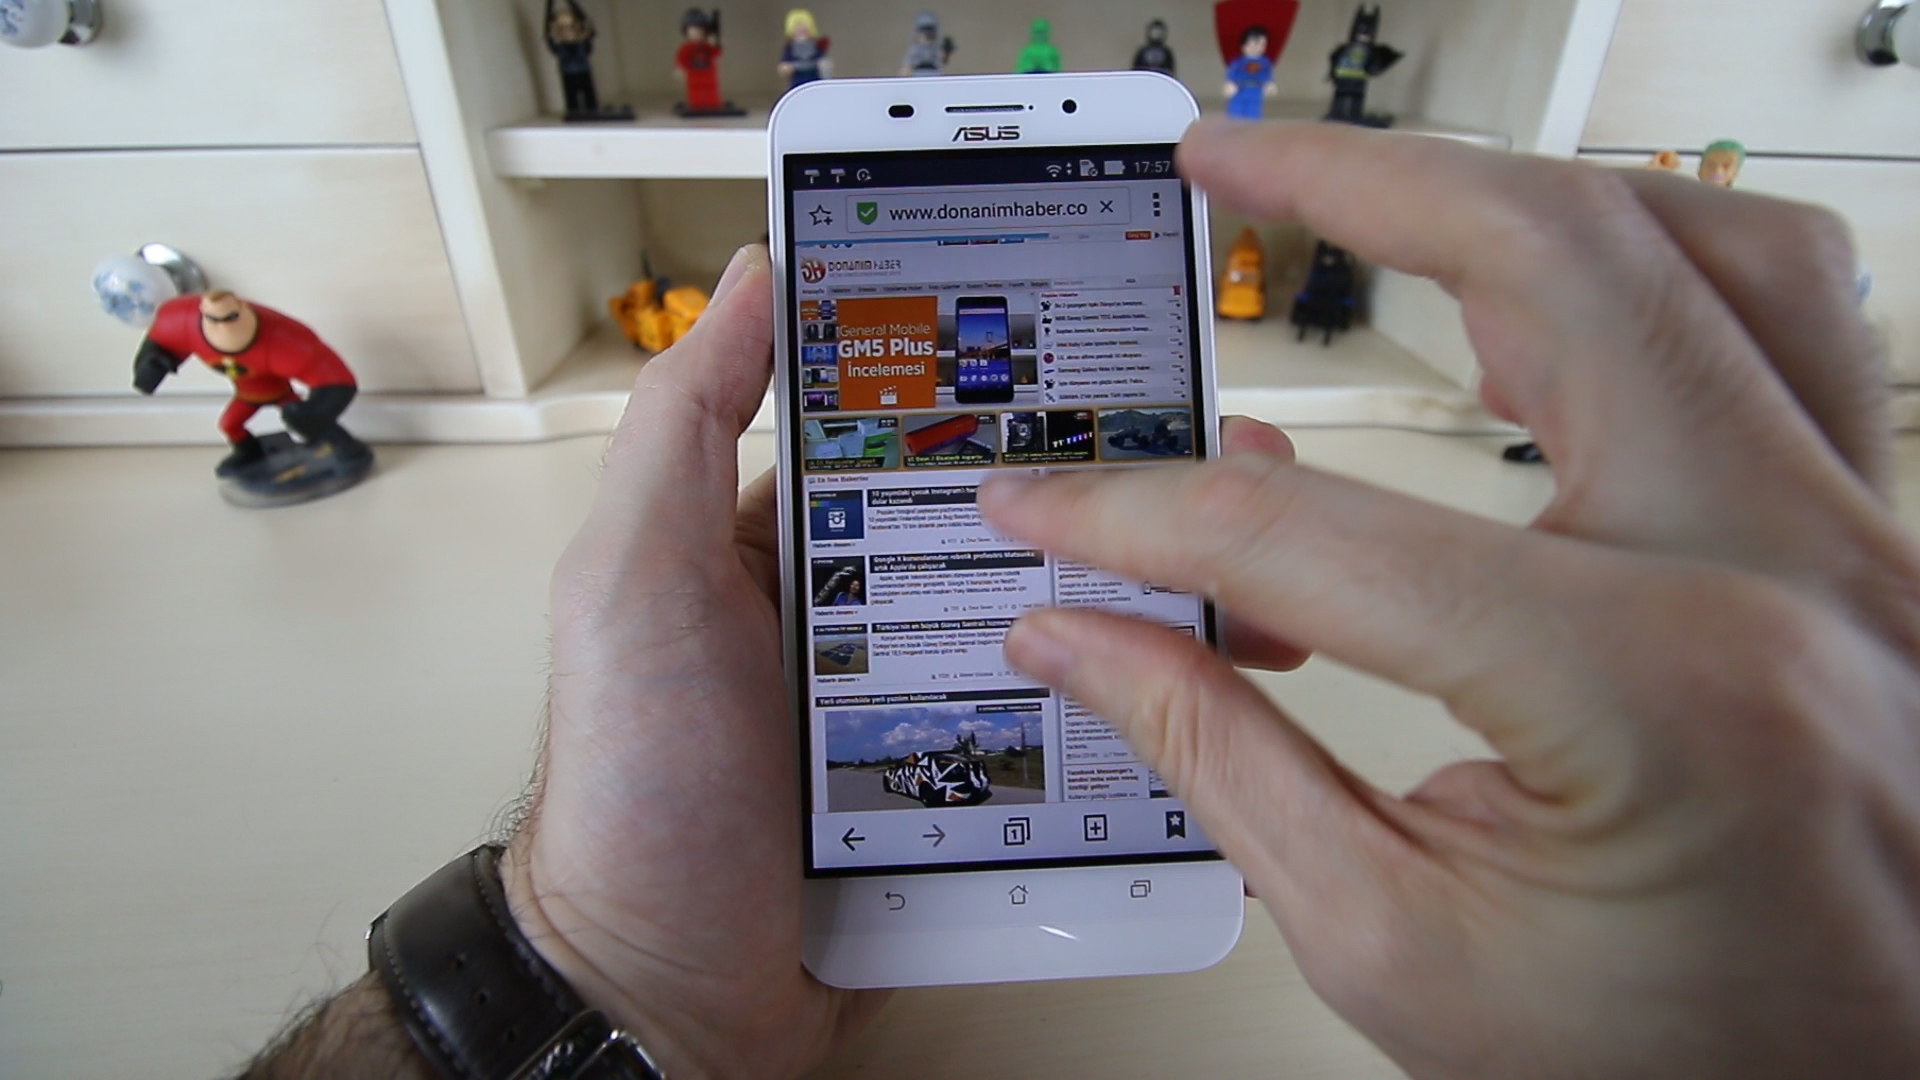 Asus ZenFone Max inceleme videosu 'Pili bitmeyen telefon'